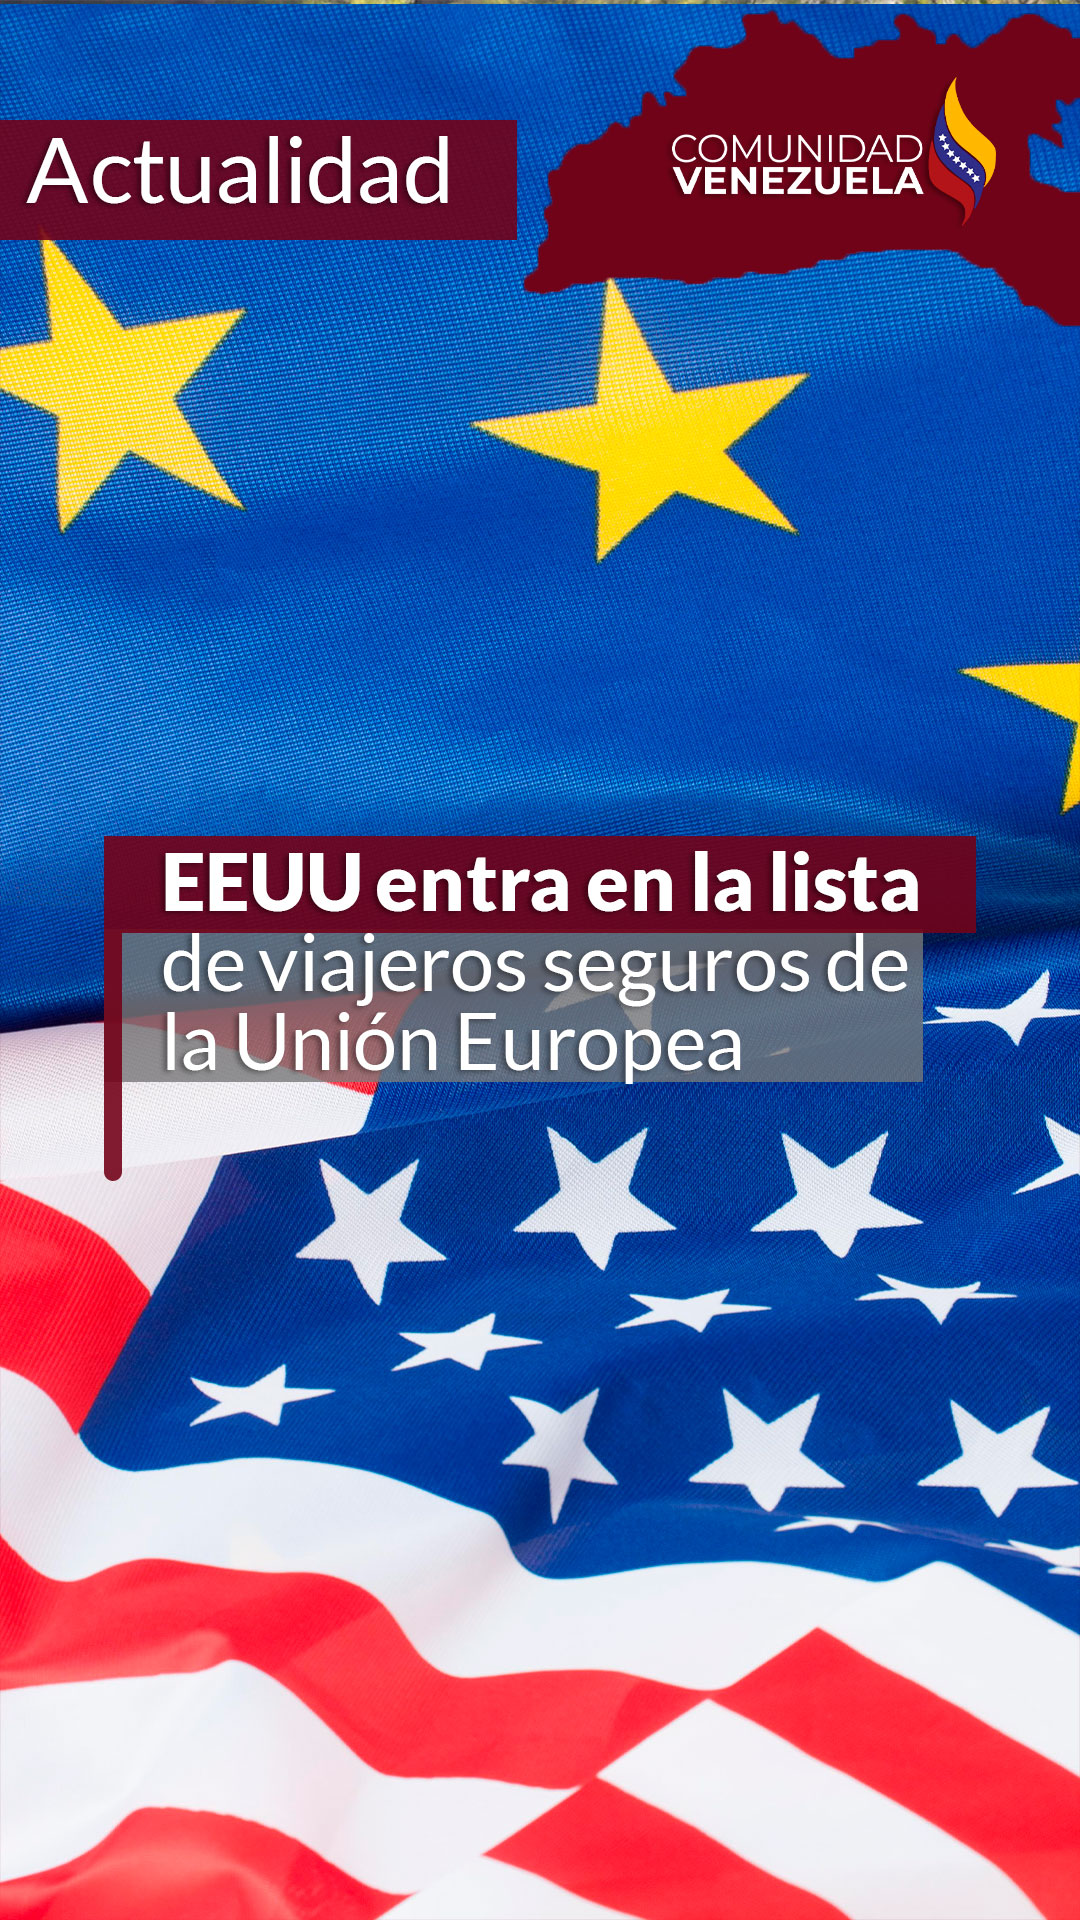 EEUU entra en la lista de viajeros seguros de la Unión Europea